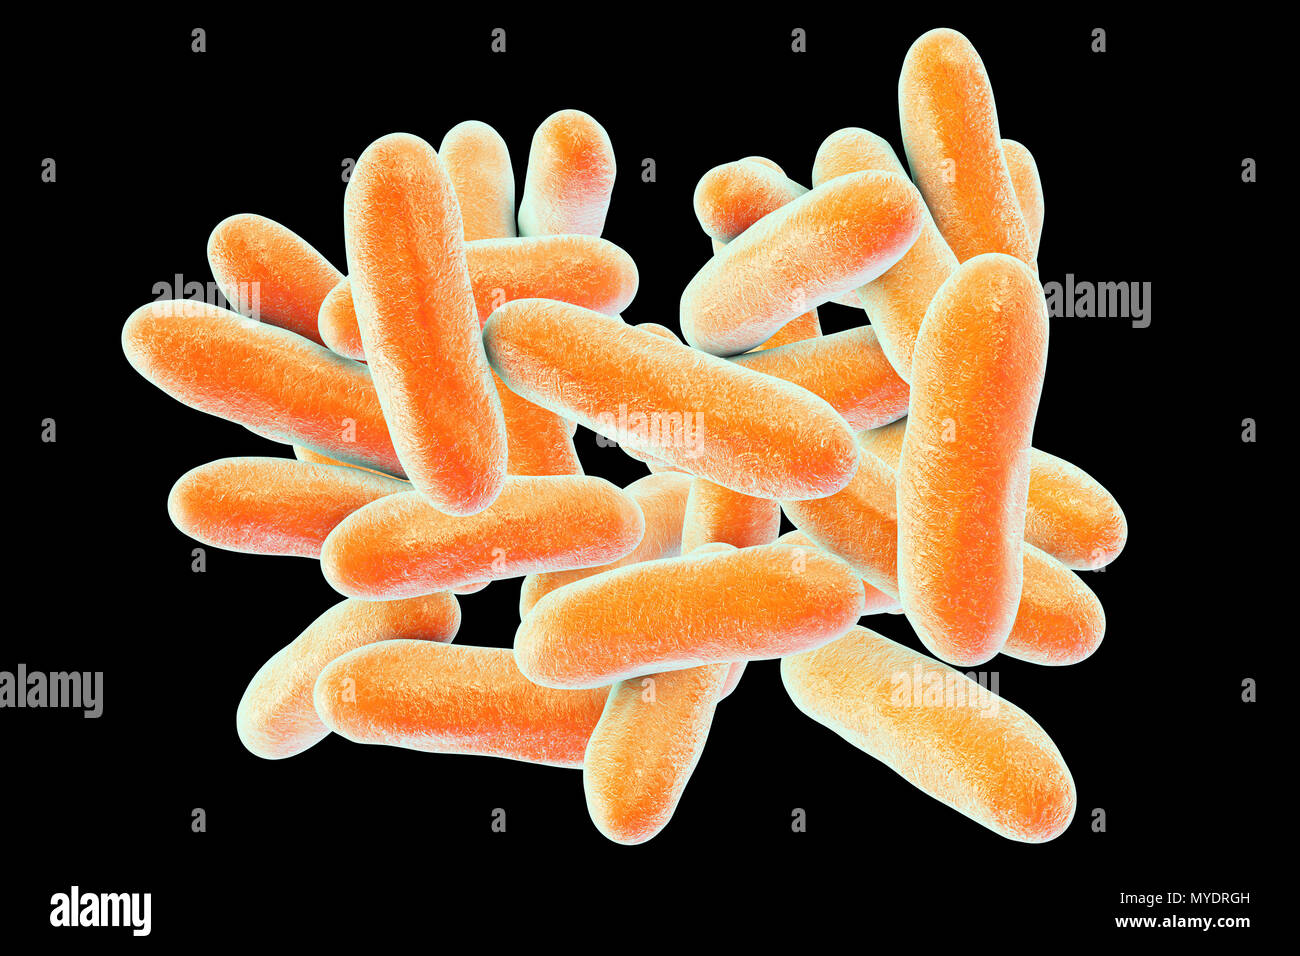 Le legionelle batteri. Computer illustrazione della Legionella pneumophila  batteri, la causa del morbo del legionario. Questi bacilli (a forma di asta  batteri) sono Gram-negativi. L. pneumophila è stato identificato come un  agente